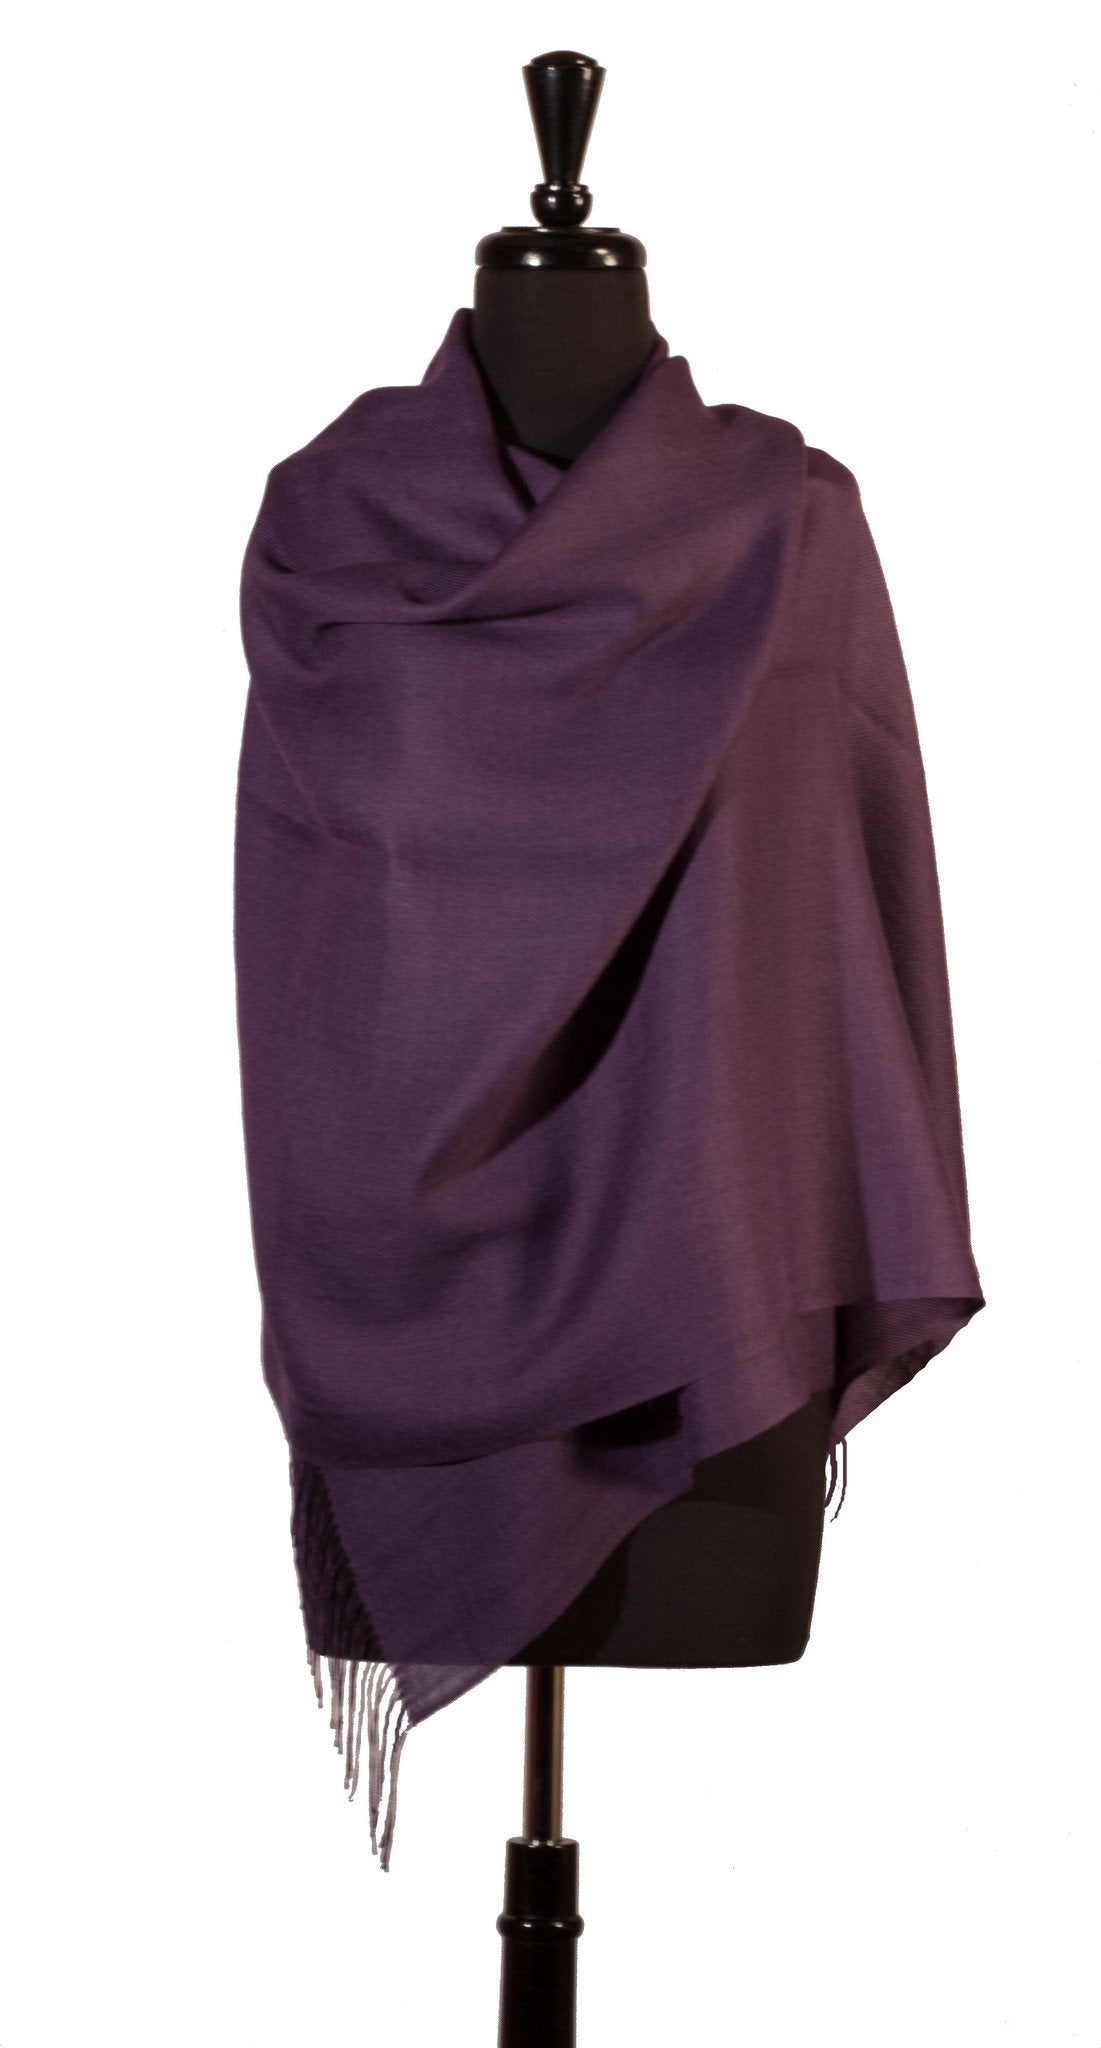 Baby Alpaca & Silk Shawl in Solid Color - Dark Purple - Qinti - The Peruvian Shop